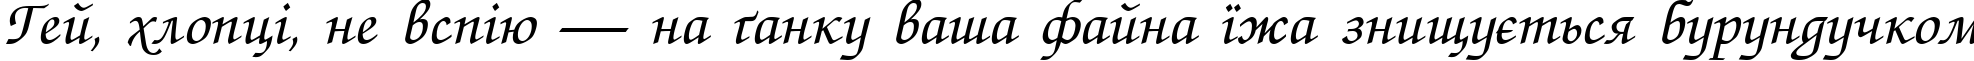 Пример написания шрифтом Zapf ChanceC Italic текста на украинском